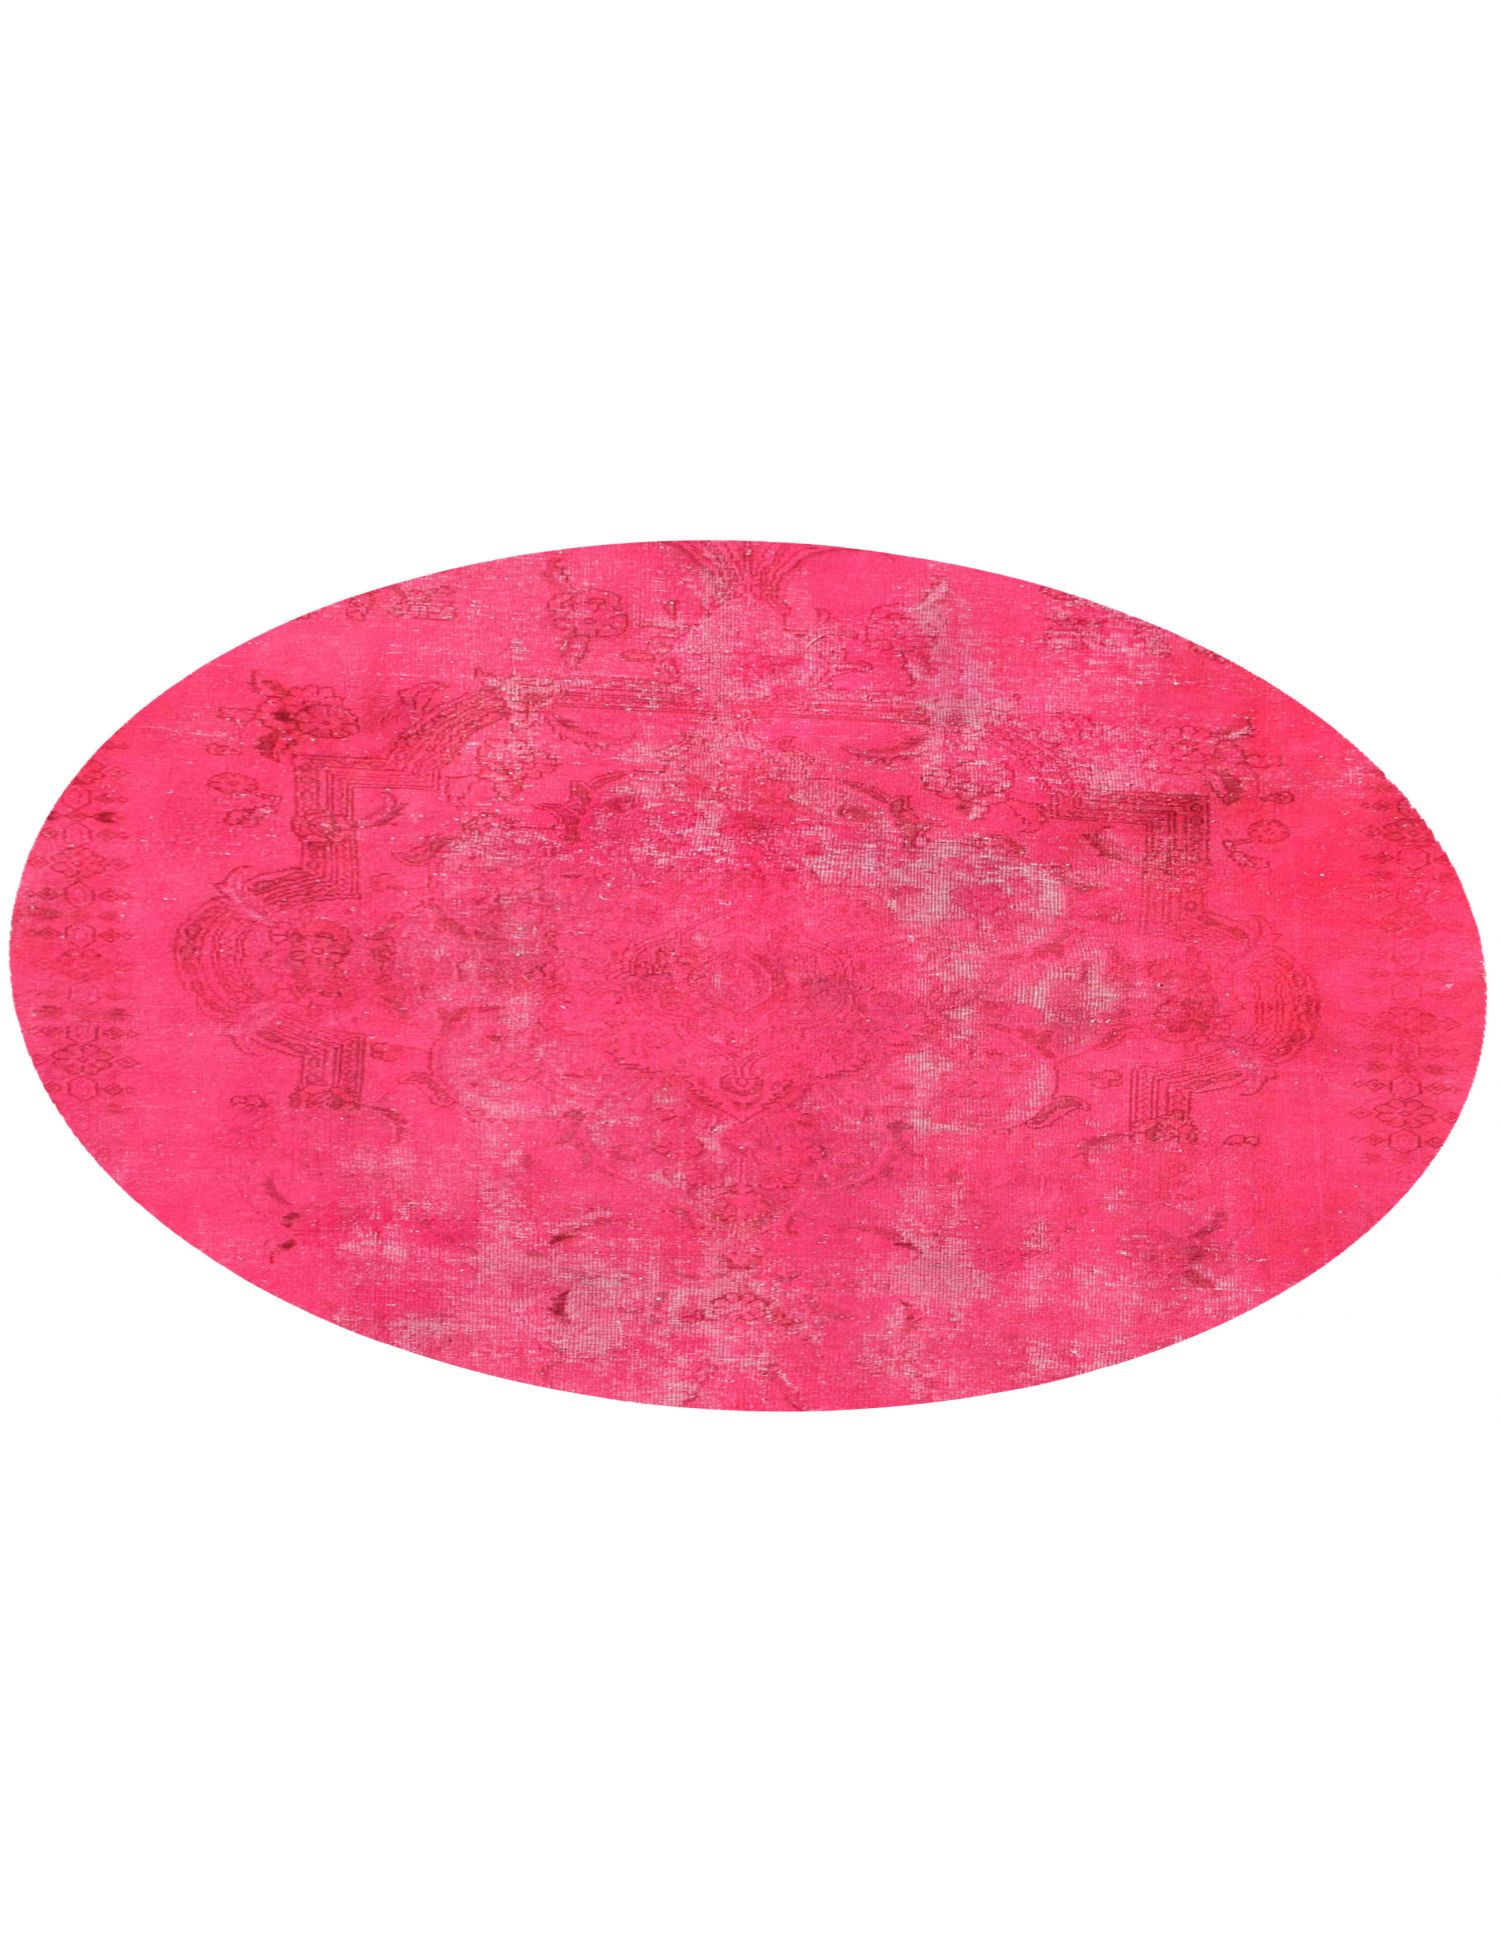 Rund  Vintage Teppich  rosa <br/>200 x 200 cm